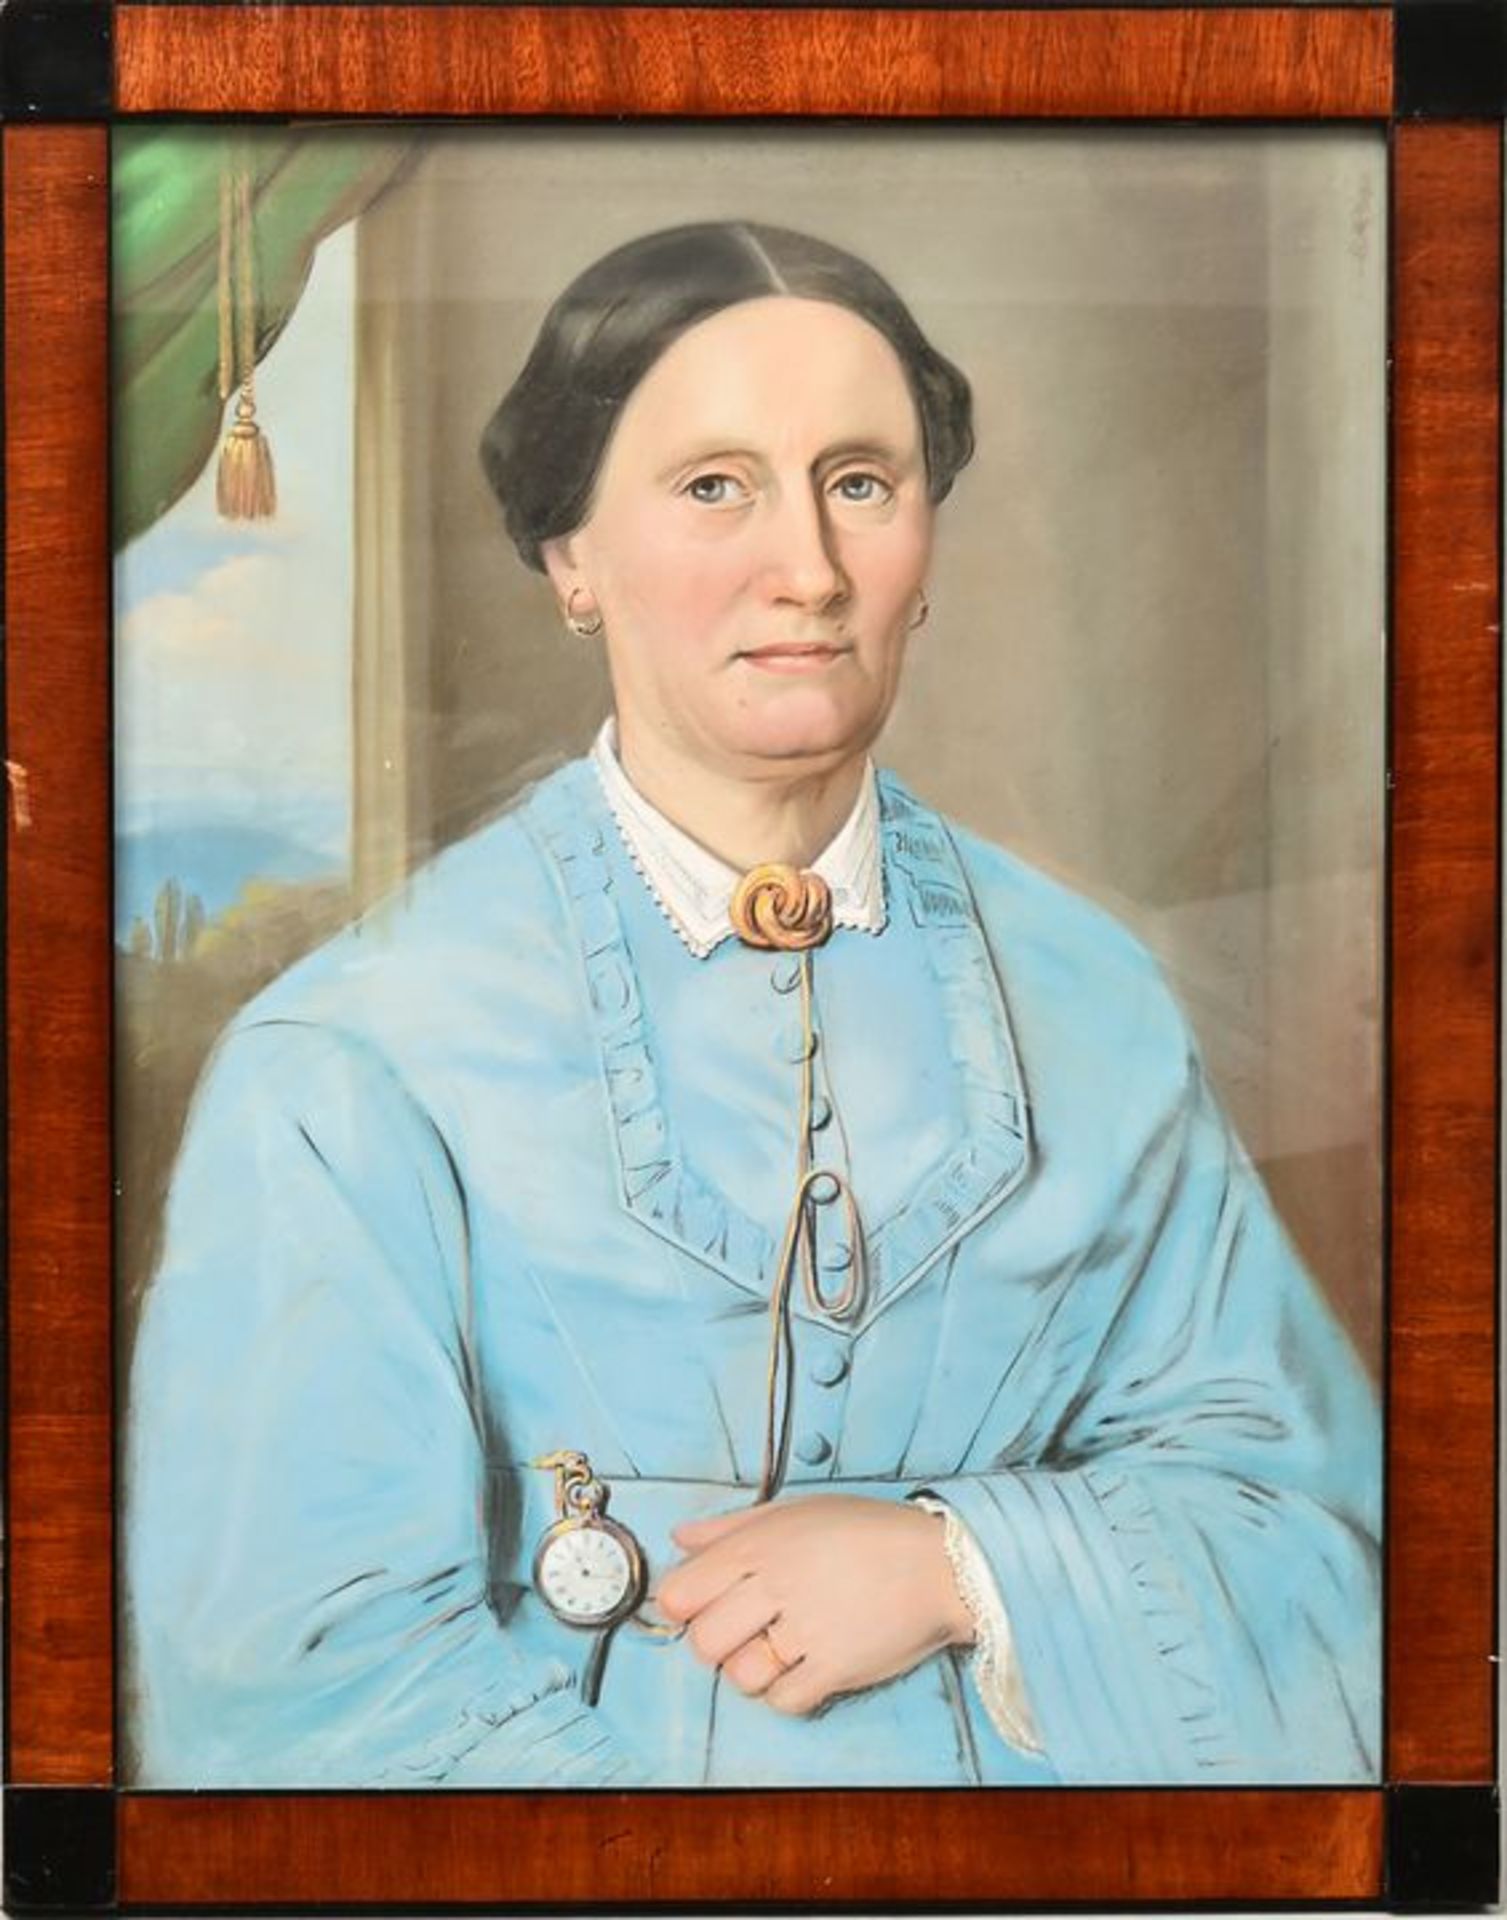 Damenportrait, Pastell / Portrait of a Lady, Pastels - Bild 3 aus 3